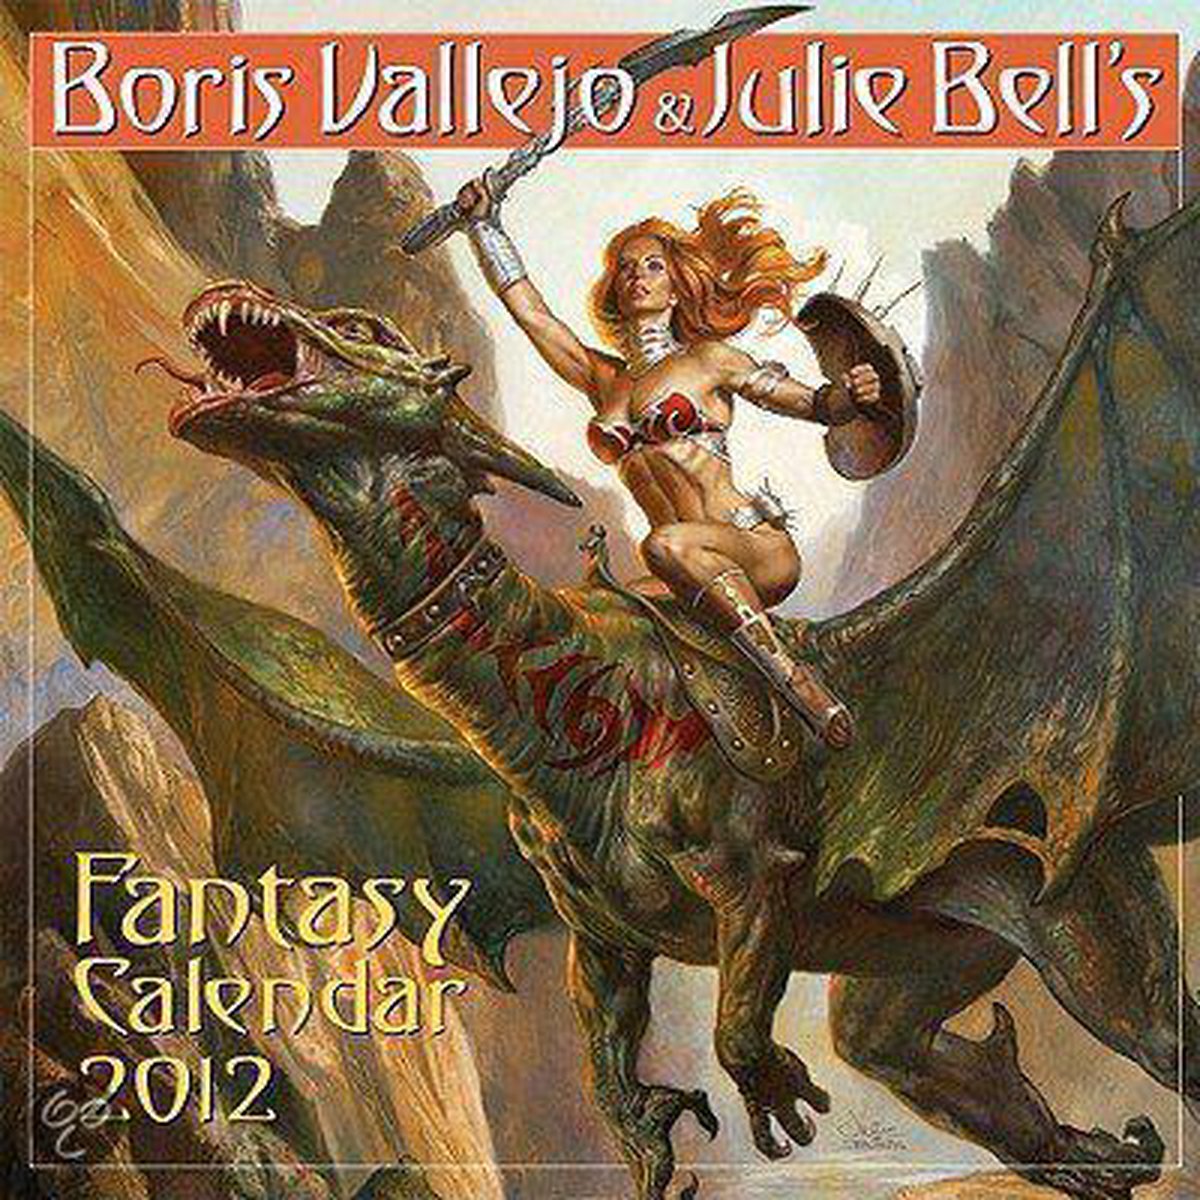 Boris Vallejo & Julie Bell's Fantasy Calendar 9780761162469